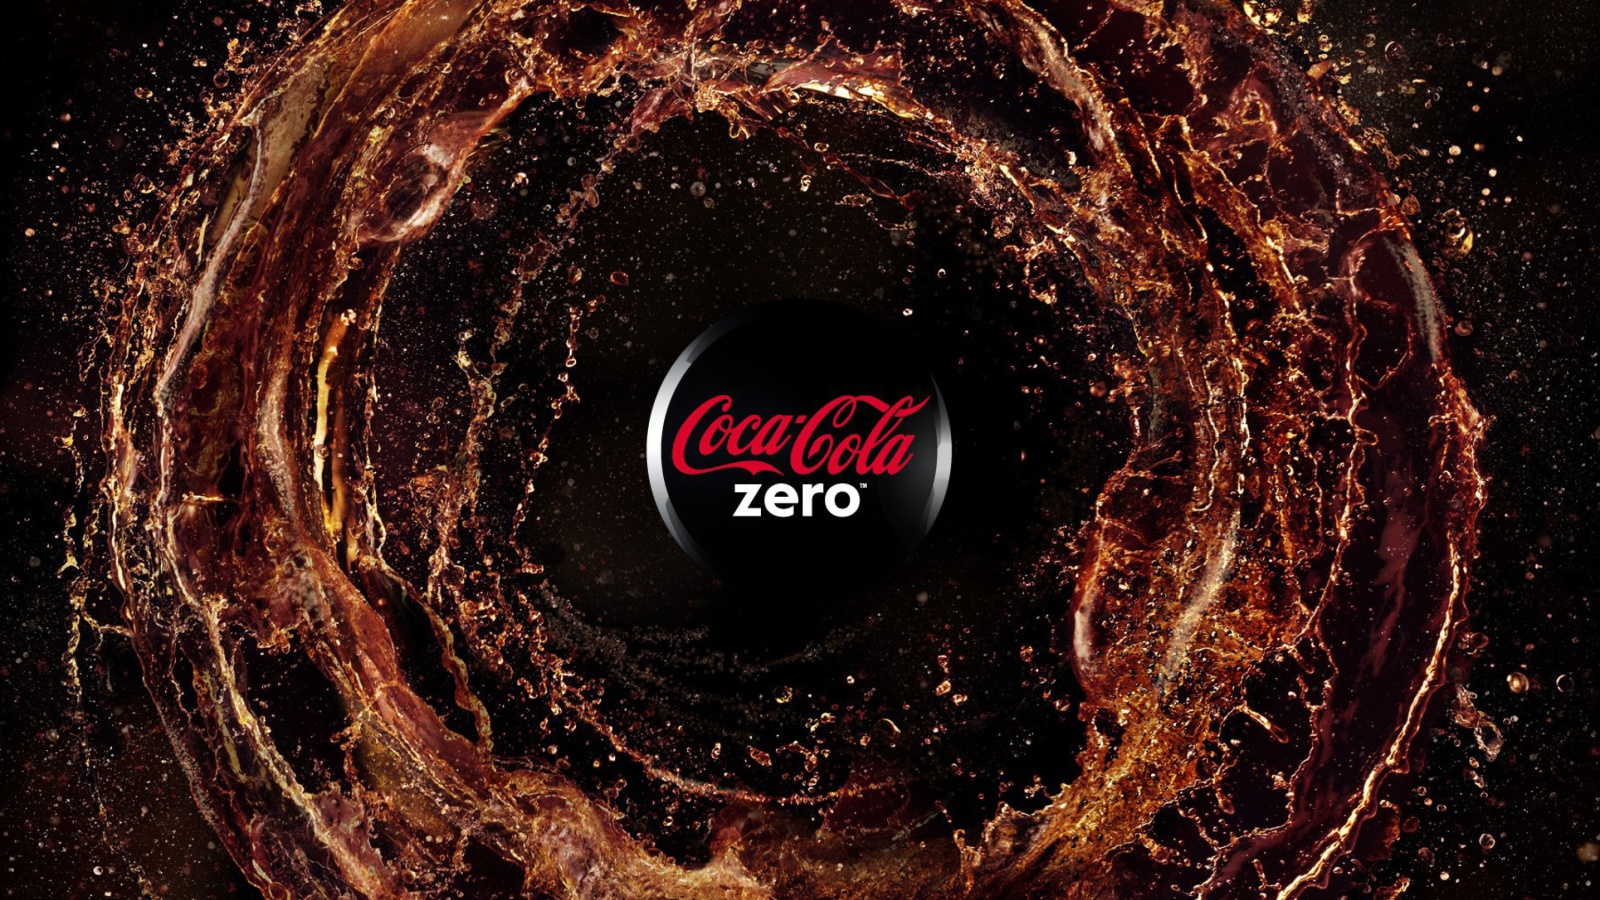 Sfondi Coca Cola Zero - Diet and Sugar Free 1600x900